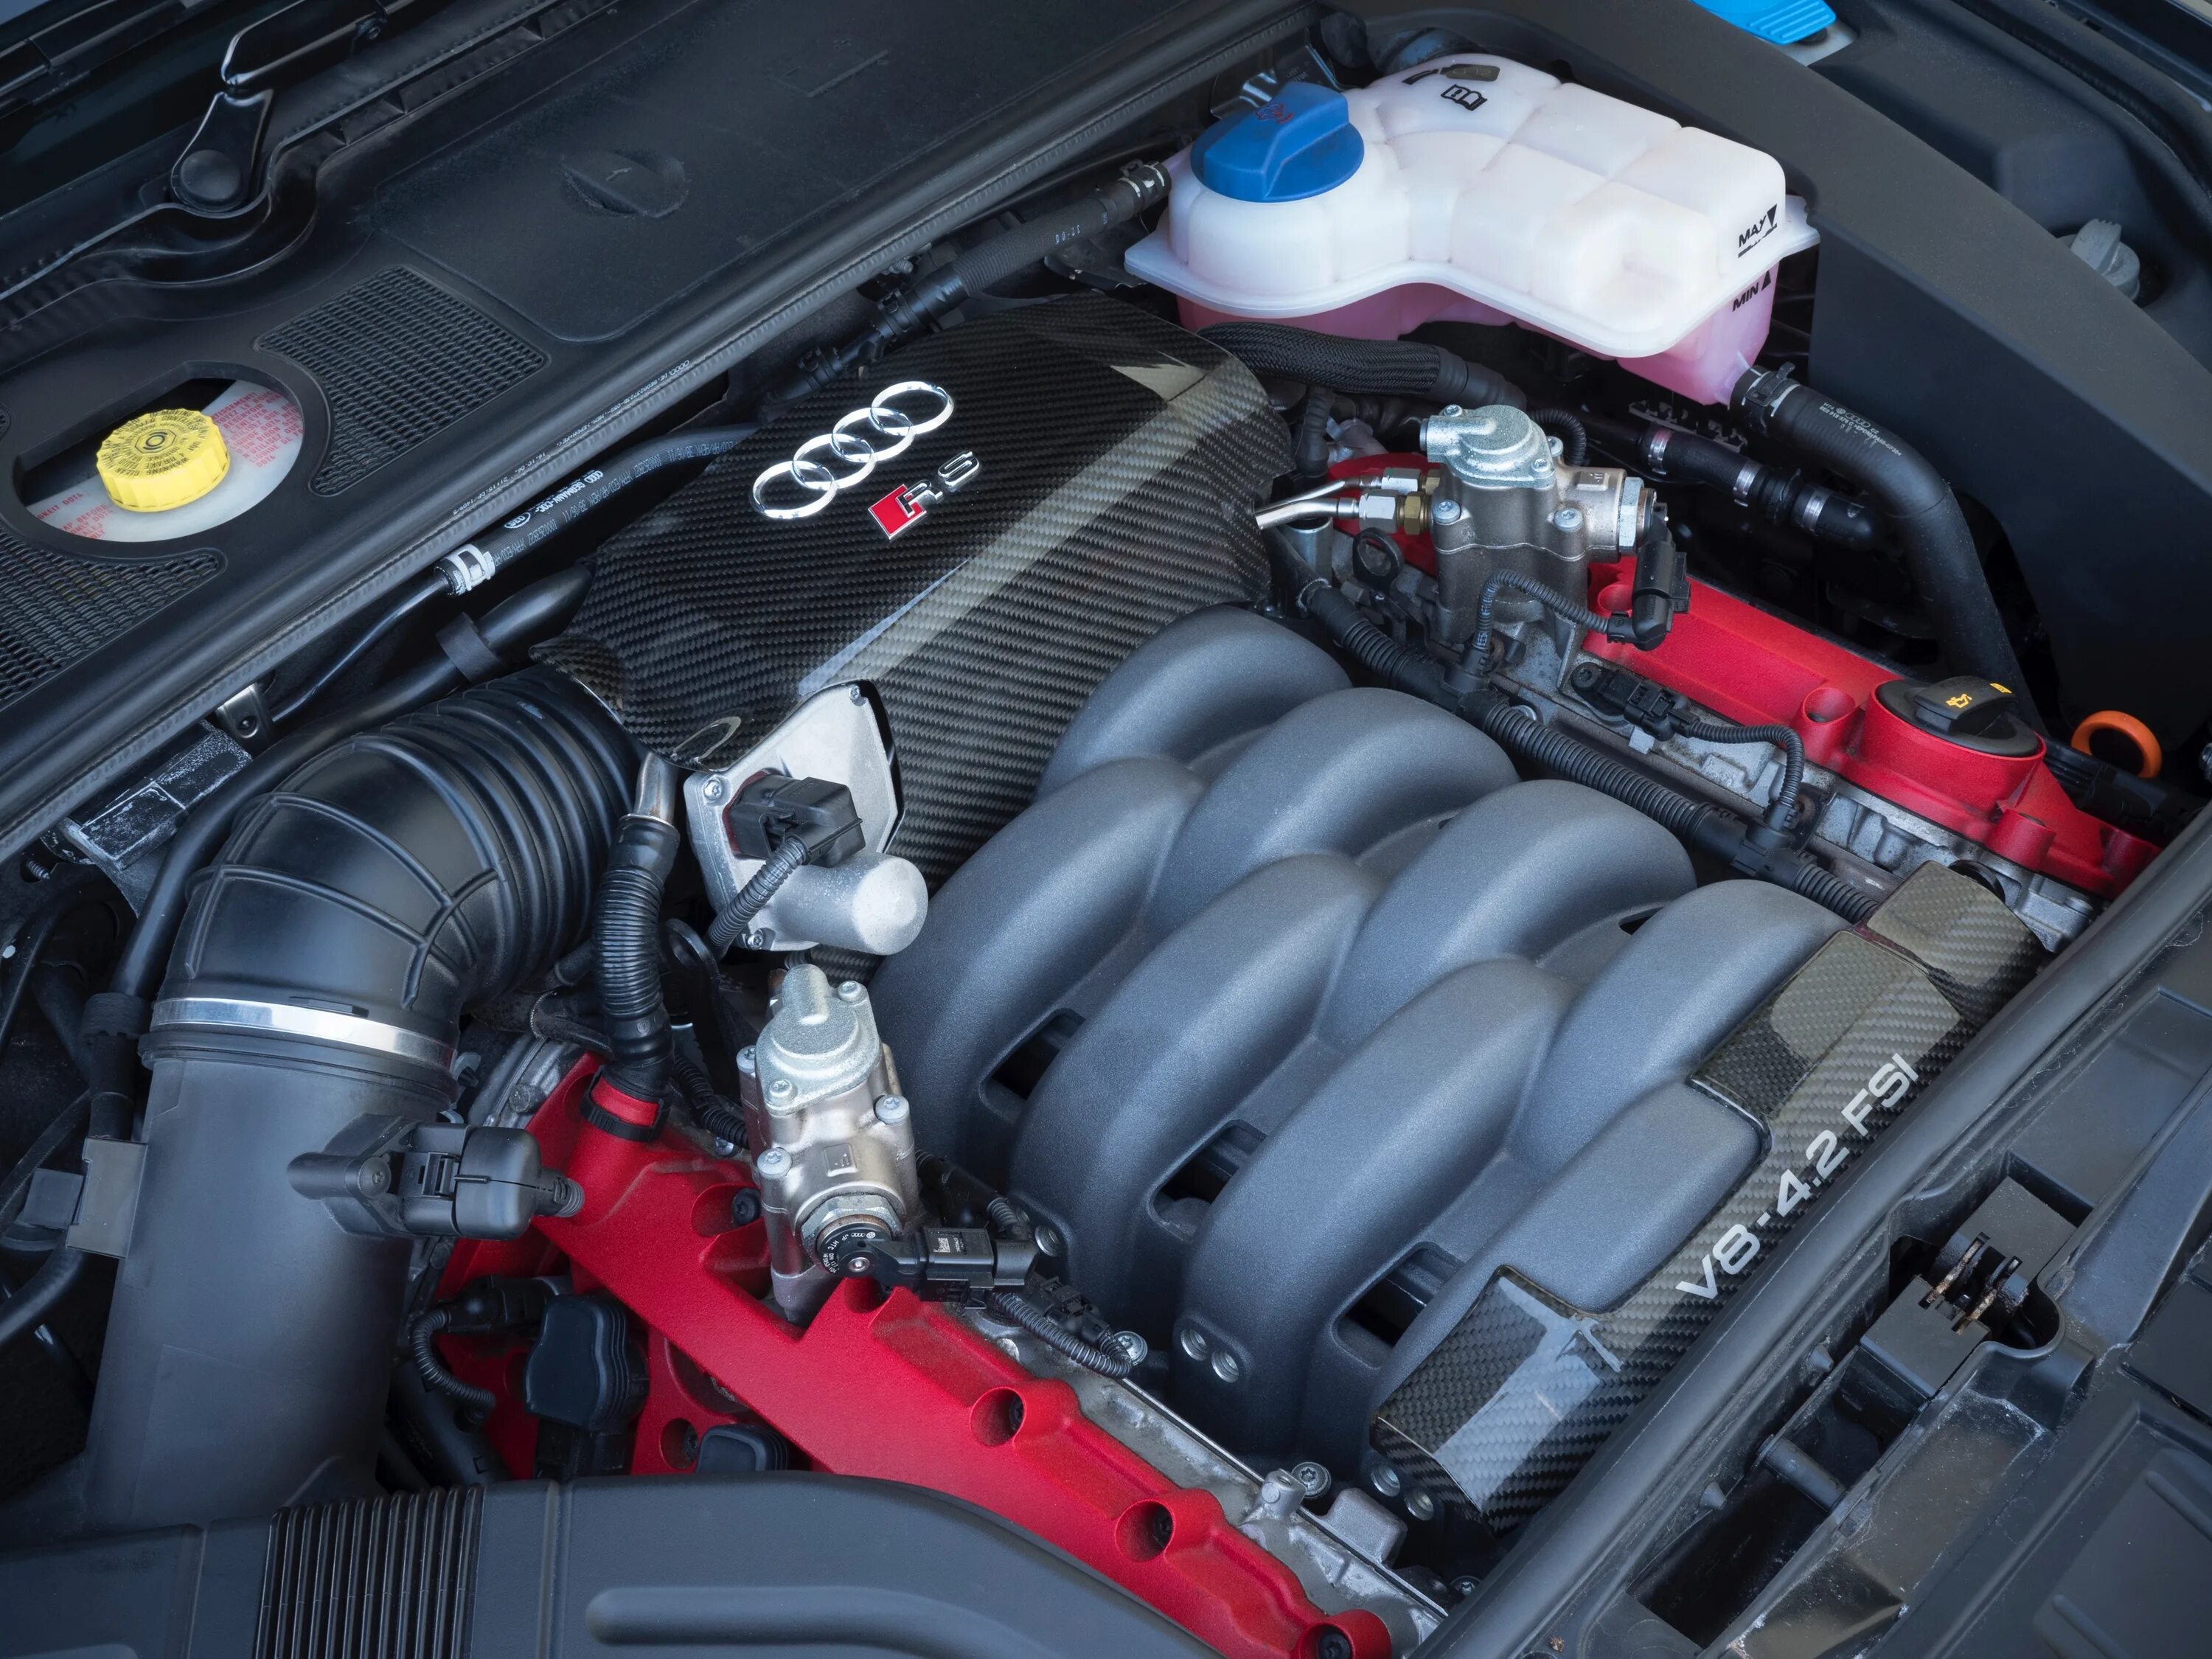 За 7 с двигатель автомобиля. Audi rs4 b7 двигатель. Audi rs4 engine. Audi a4 b7 моторный отсек. Двигатель Audi rs4 b5.